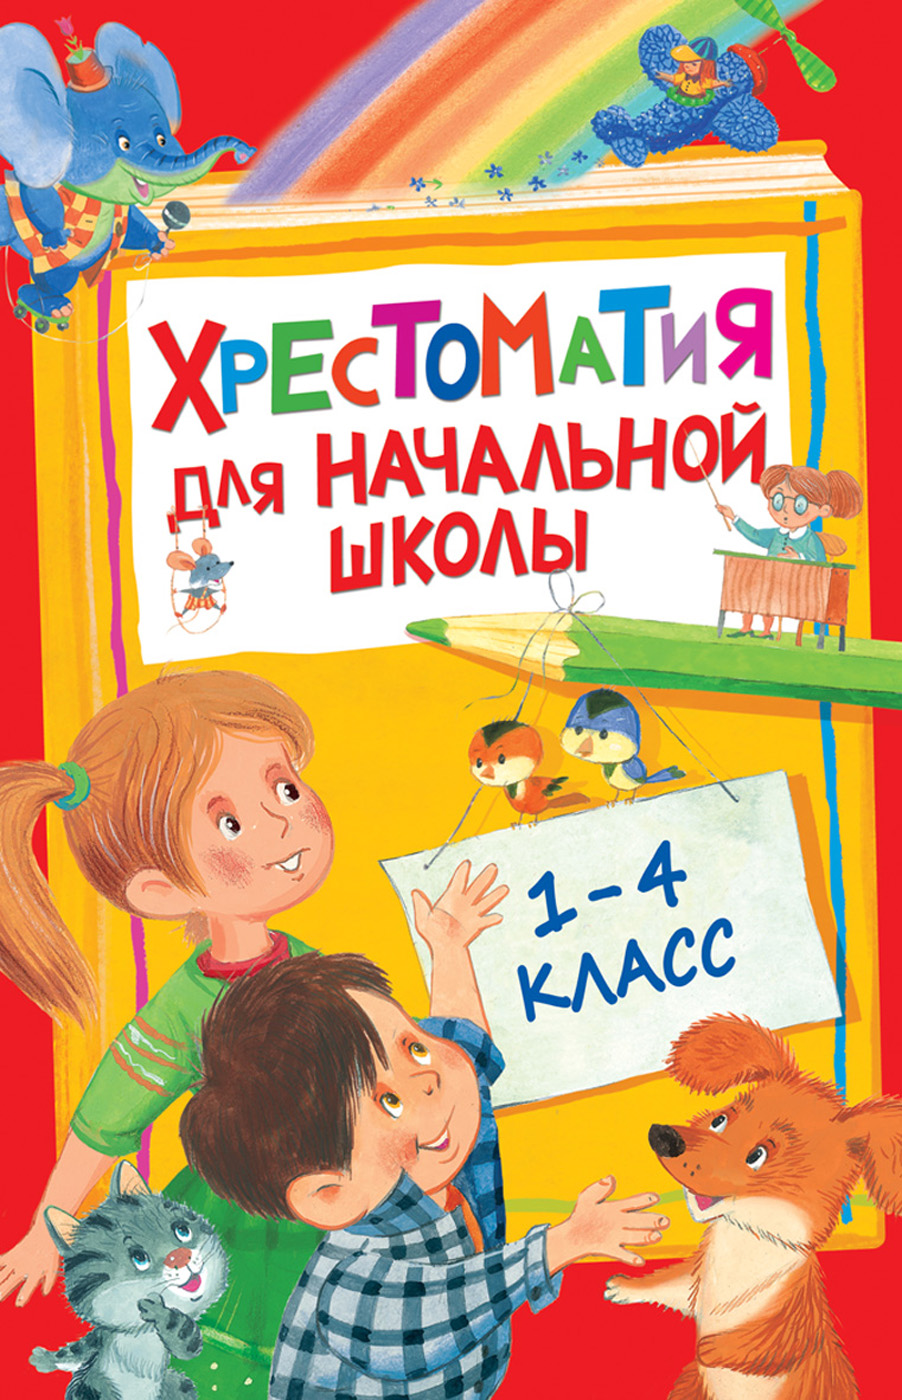 Книга 28524 Хрестоматия для начальной школы 1-4 класс Росмэн - Орск 